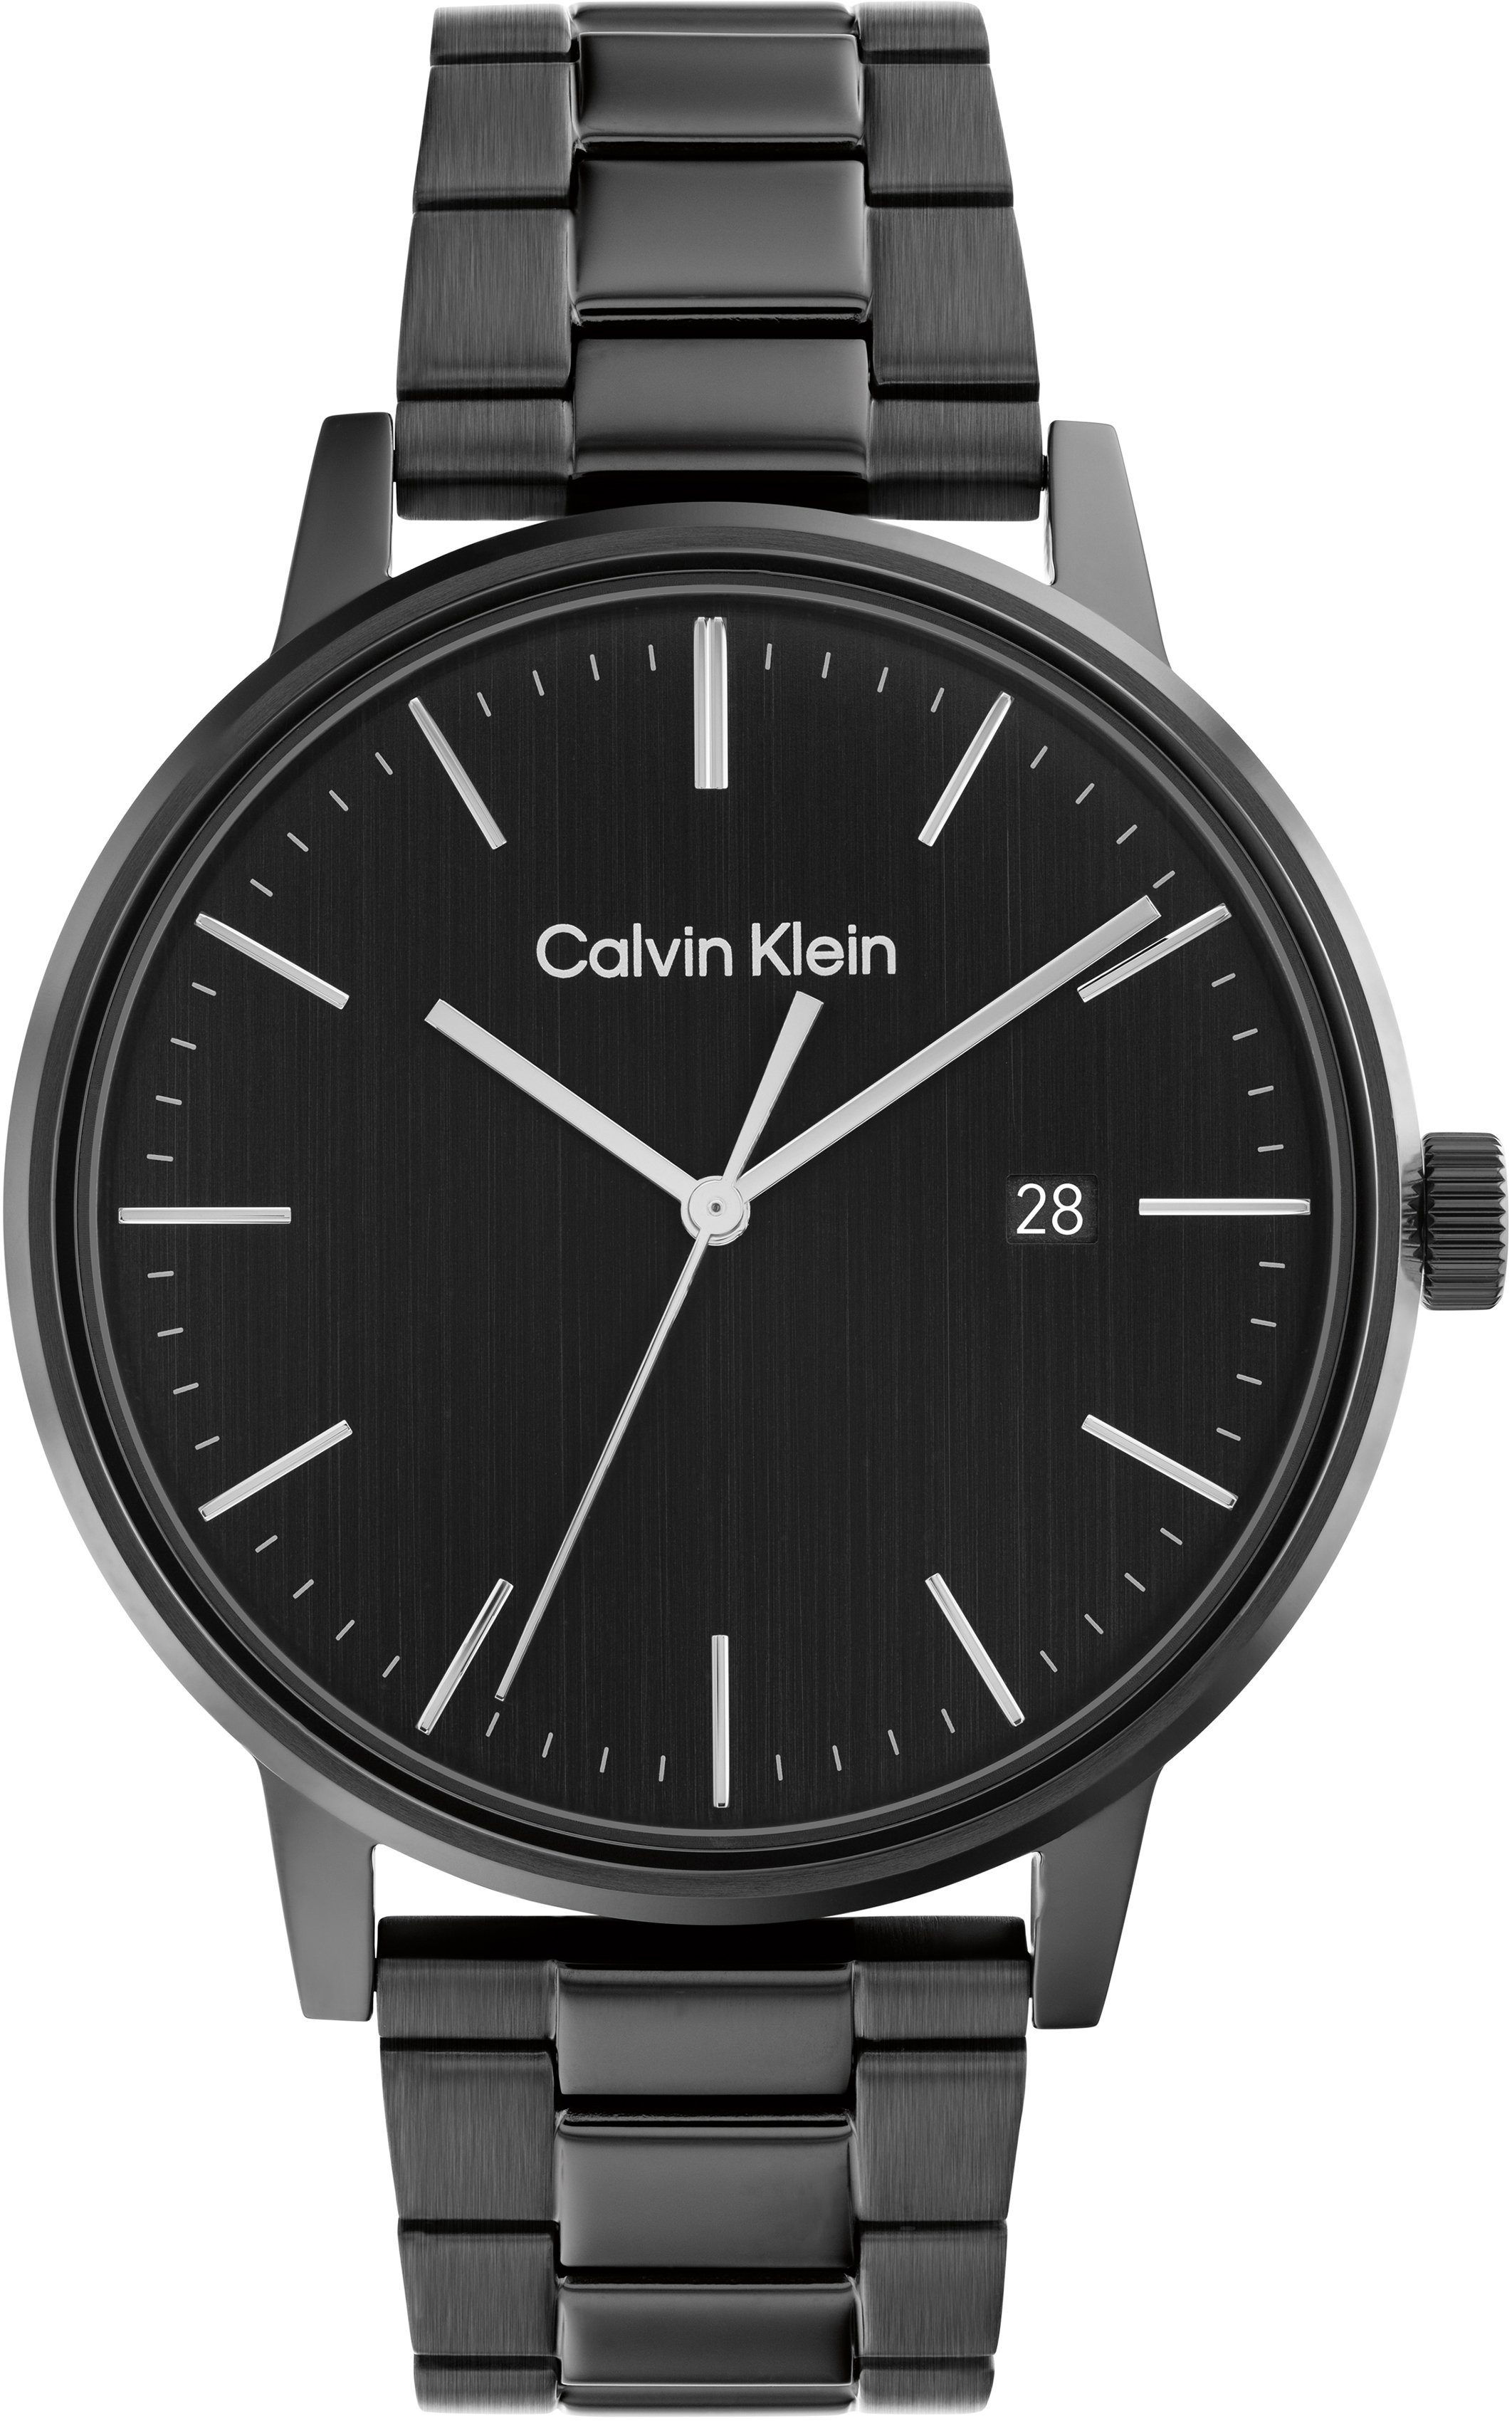 Calvin Klein Quarzuhr Linked, 25200057, Armbanduhr, Herrenuhr, Datum, Mineralglas, IP-Beschichtung